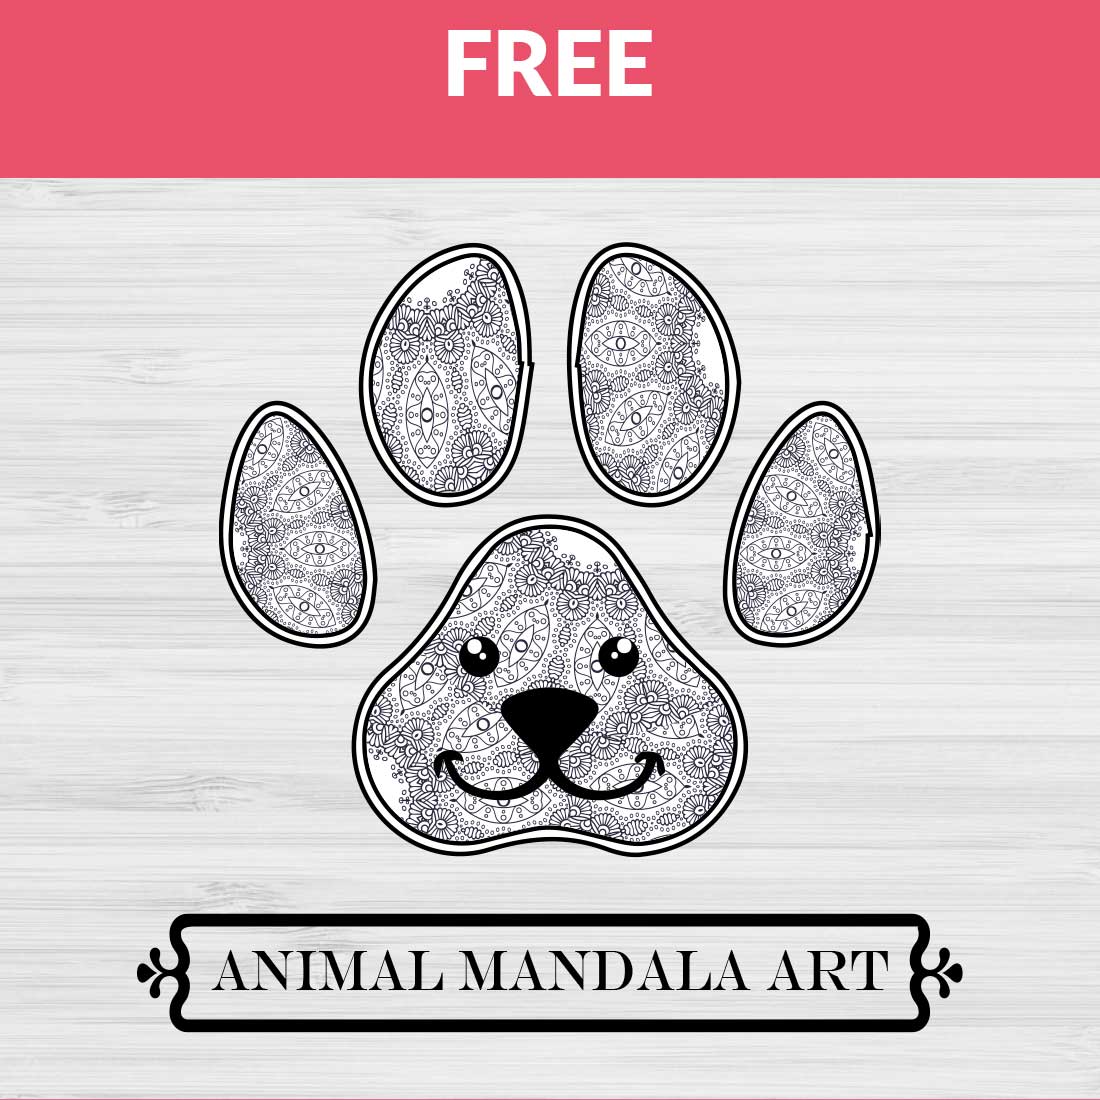 Dog Mandala cover image.